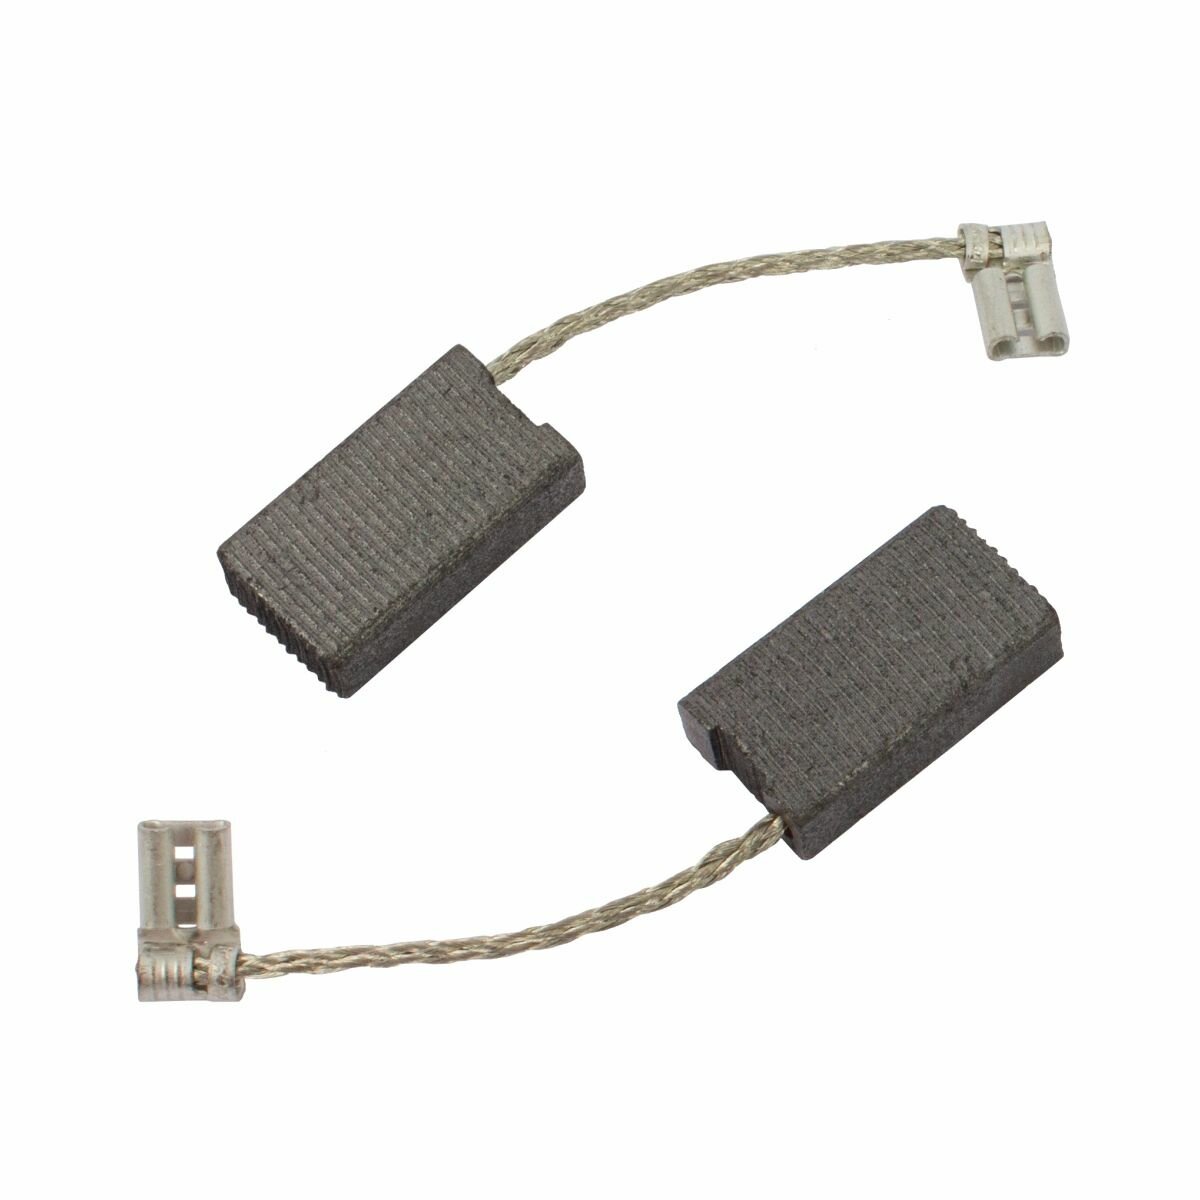 COFRA комплект из двух угольных щеток для электроинструмента bosch (разъем "мама"), размеры: 6x12,5x22 мм, 2 шт, арт. SDB-34586